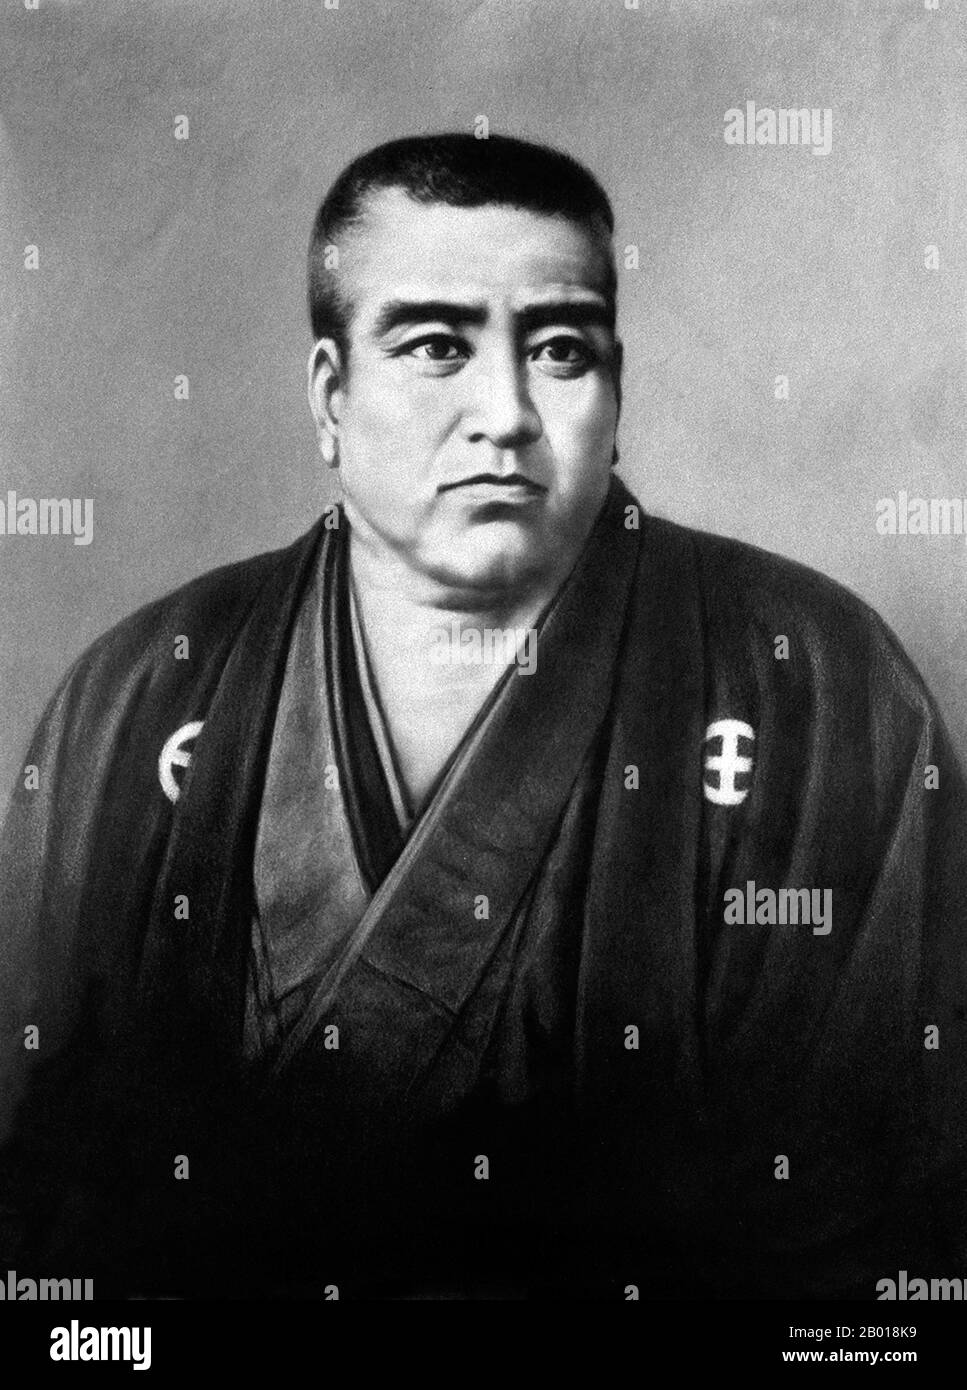 Japon: Saigō Takamori (23 janvier 1828 - 24 septembre 1877), samouraï et noble de la fin de la période Edo et début de l'ère Meiji. Il a été surnommé le dernier vrai samouraï. Portrait de C. Nakagawa, c. 1870s. Saigō Takamori, né Saigo Kokichi et le nom littéraire Saigo Nanshu, était l'un des samouraïs les plus influents de l'histoire japonaise. Il a vécu à la fin de la période Edo et au début de l'ère Meiji, et est devenu un chef de la restauration Meiji. Plus tard, il a dirigé la rébellion avortée de Satsuma contre le gouvernement Meiji, et a commis des seppuku pendant la bataille de Shiroyama. Il est devenu un symbole national et un héros. Banque D'Images